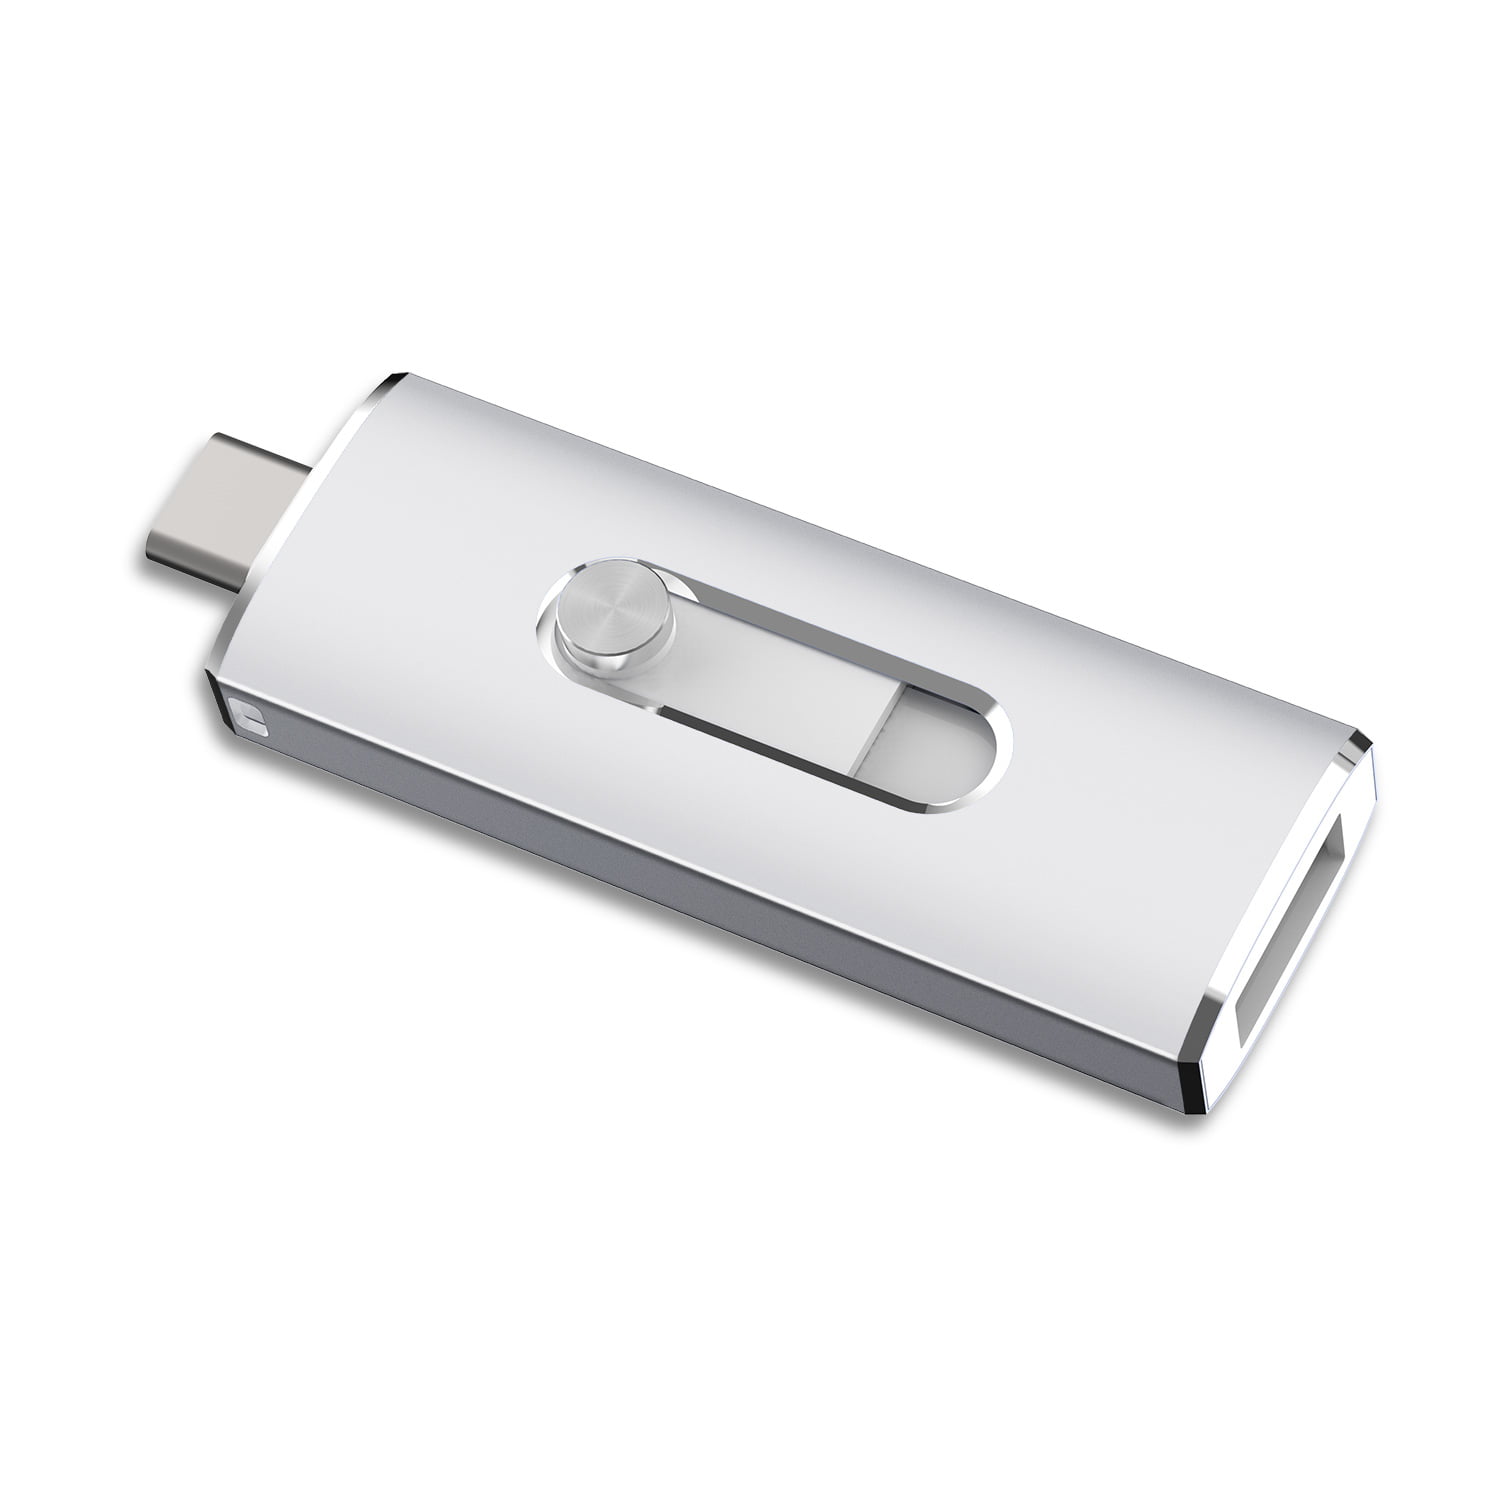 128GB OTG USB 3.0 Flash Drive with USB-C